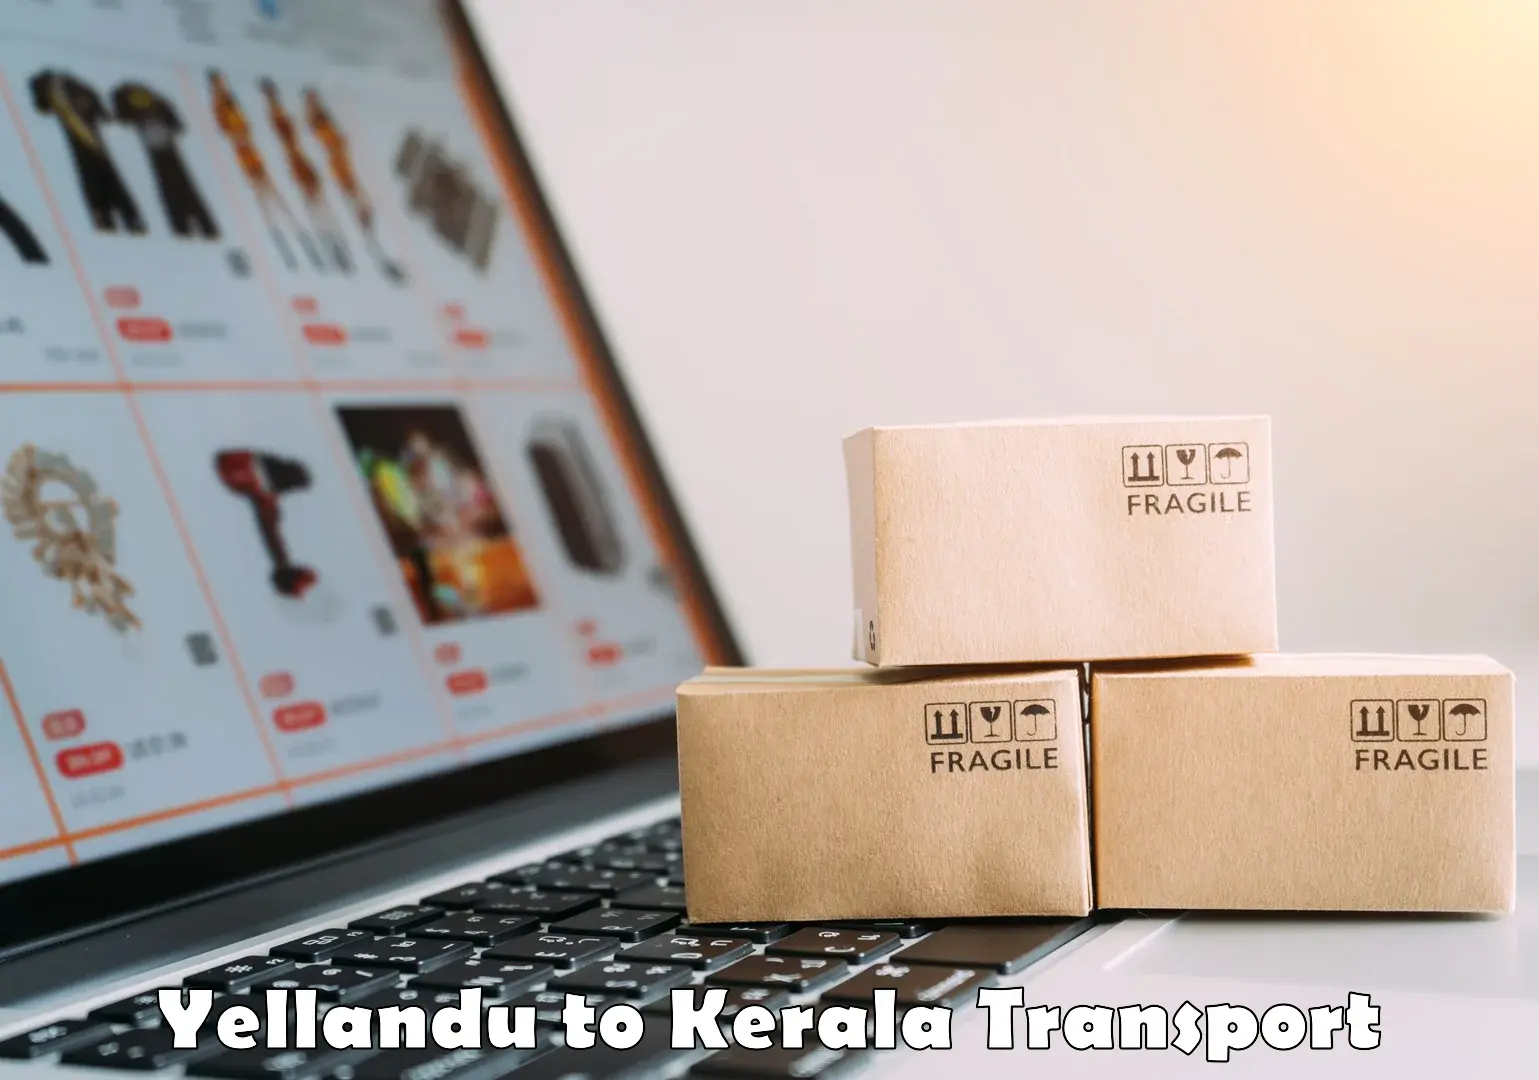 Shipping partner Yellandu to Kerala